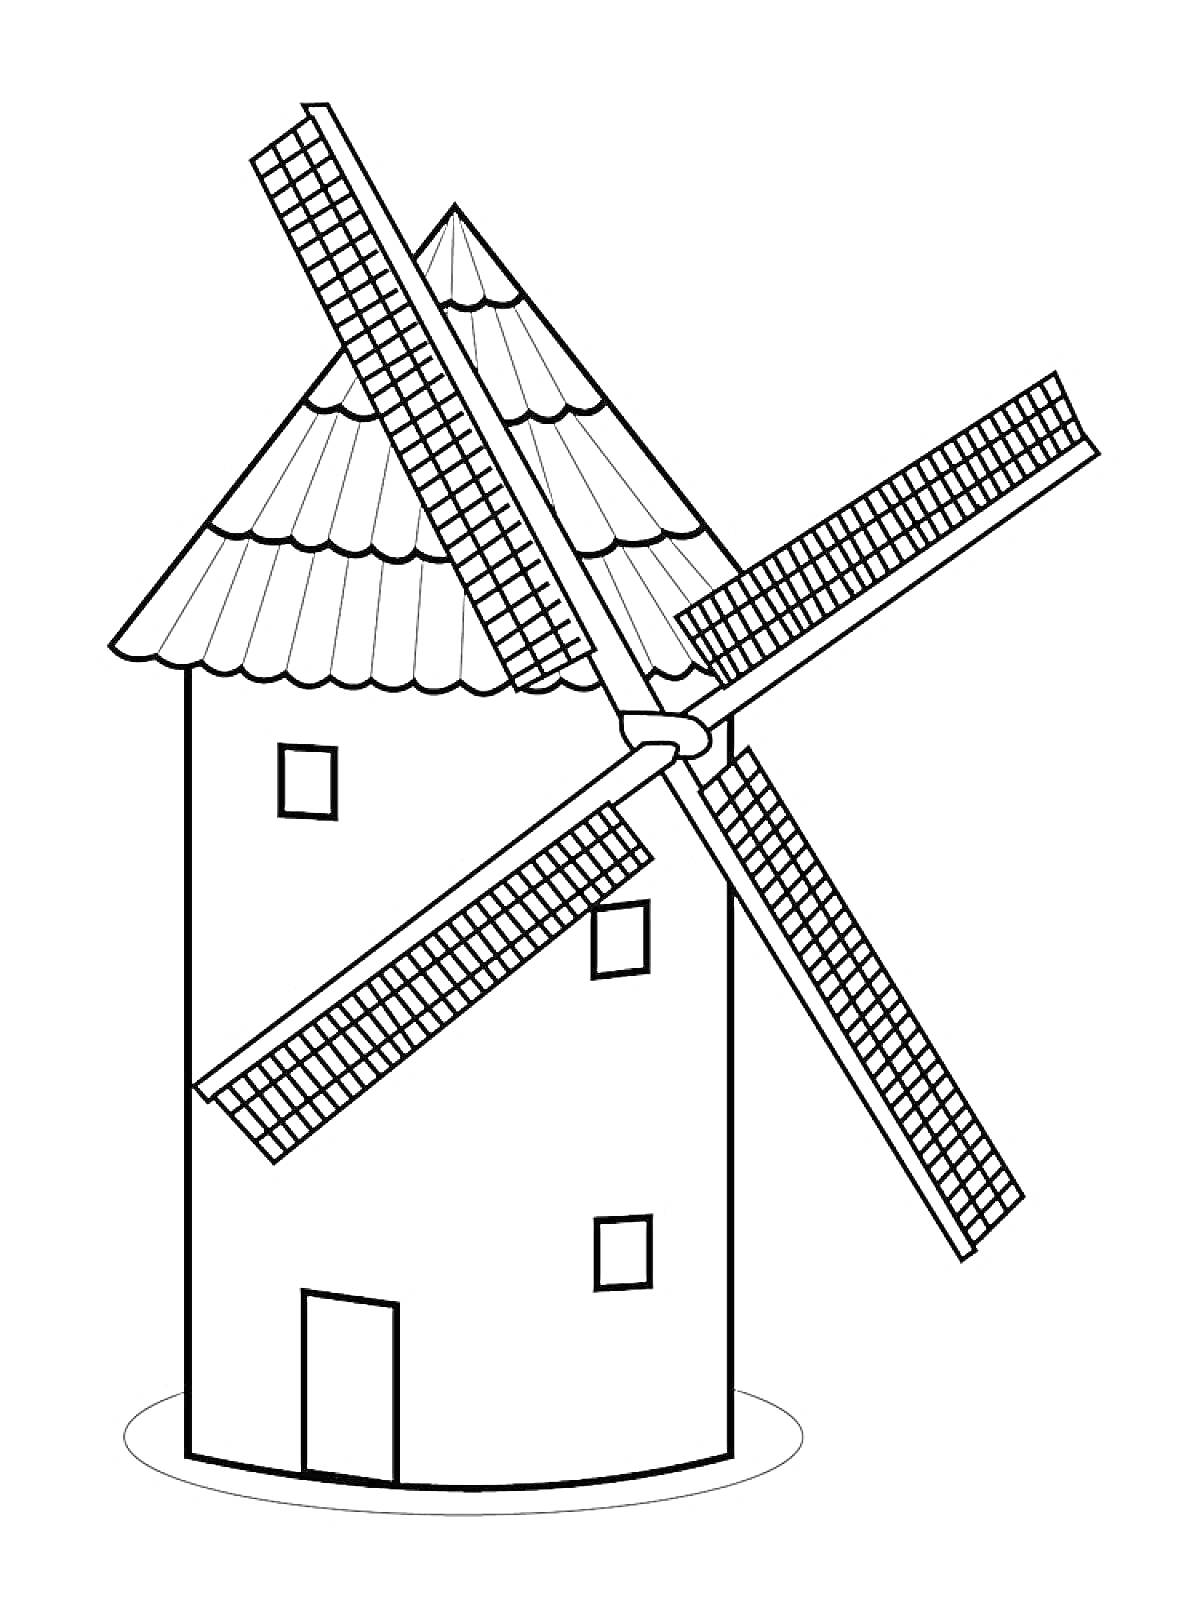 Раскраска Мельница с четырьмя лопастями, двумя окнами, одной дверью и черепичной крышей